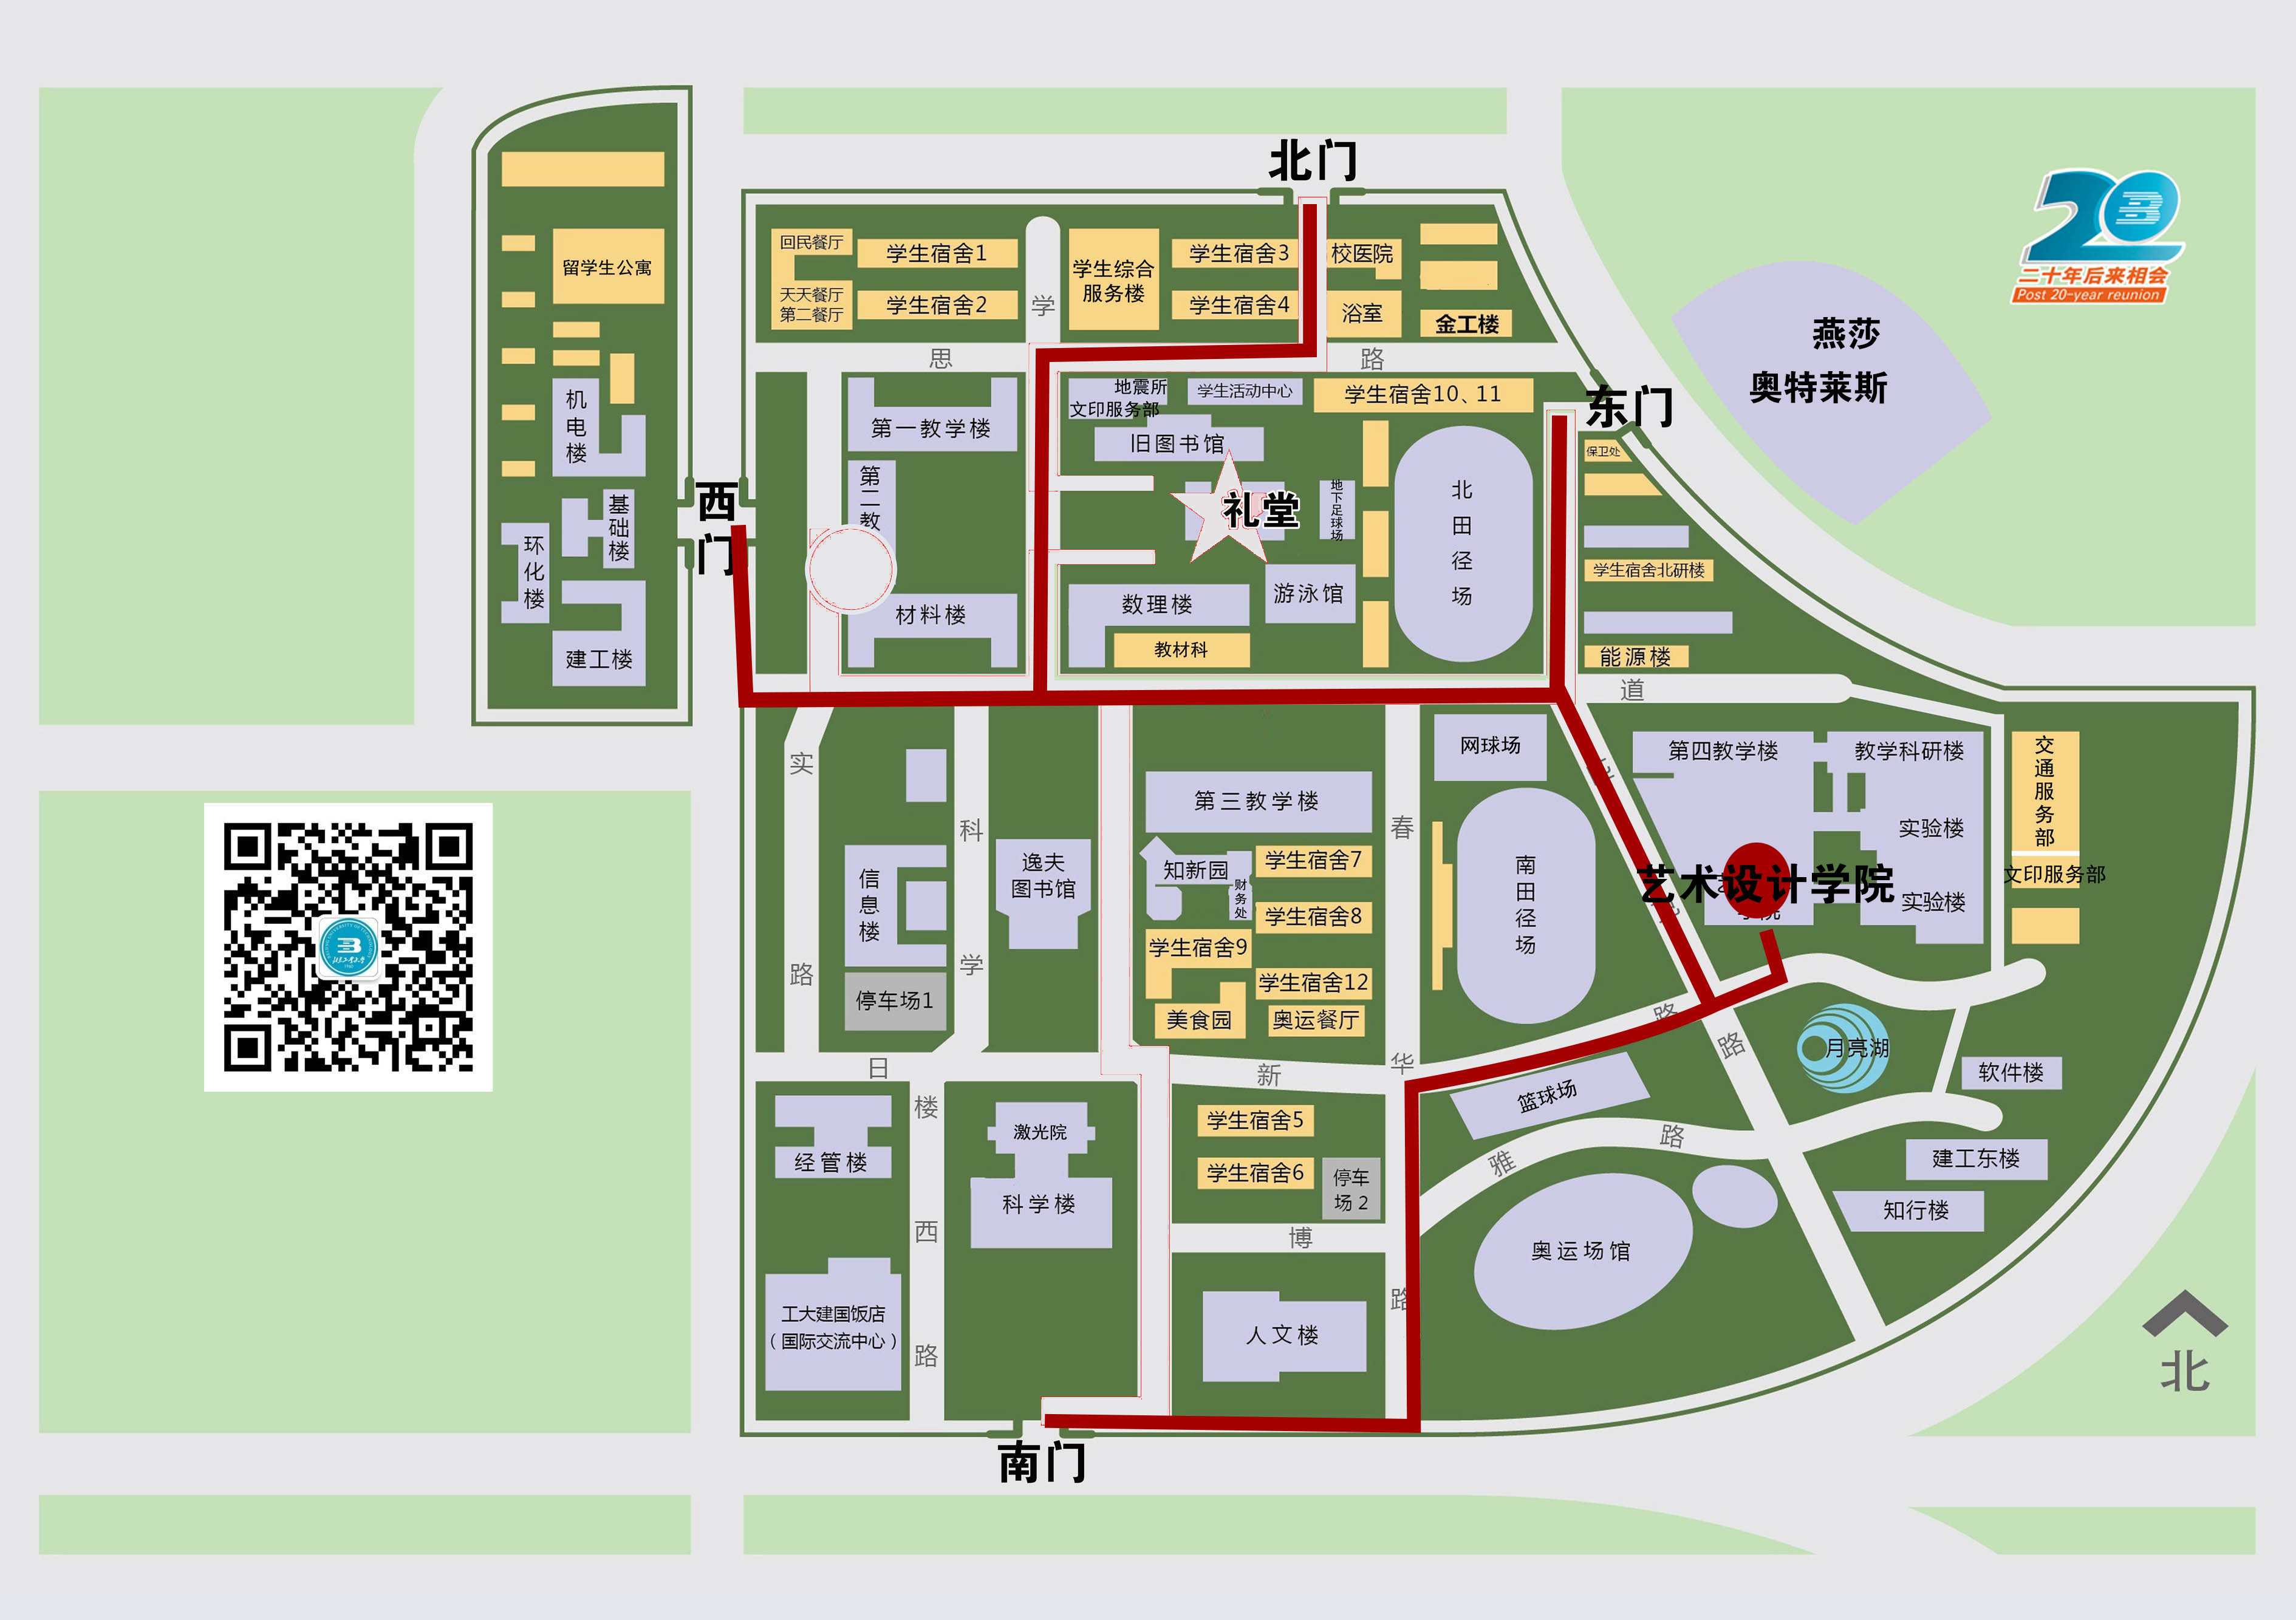 北京理工大学校园地图图片